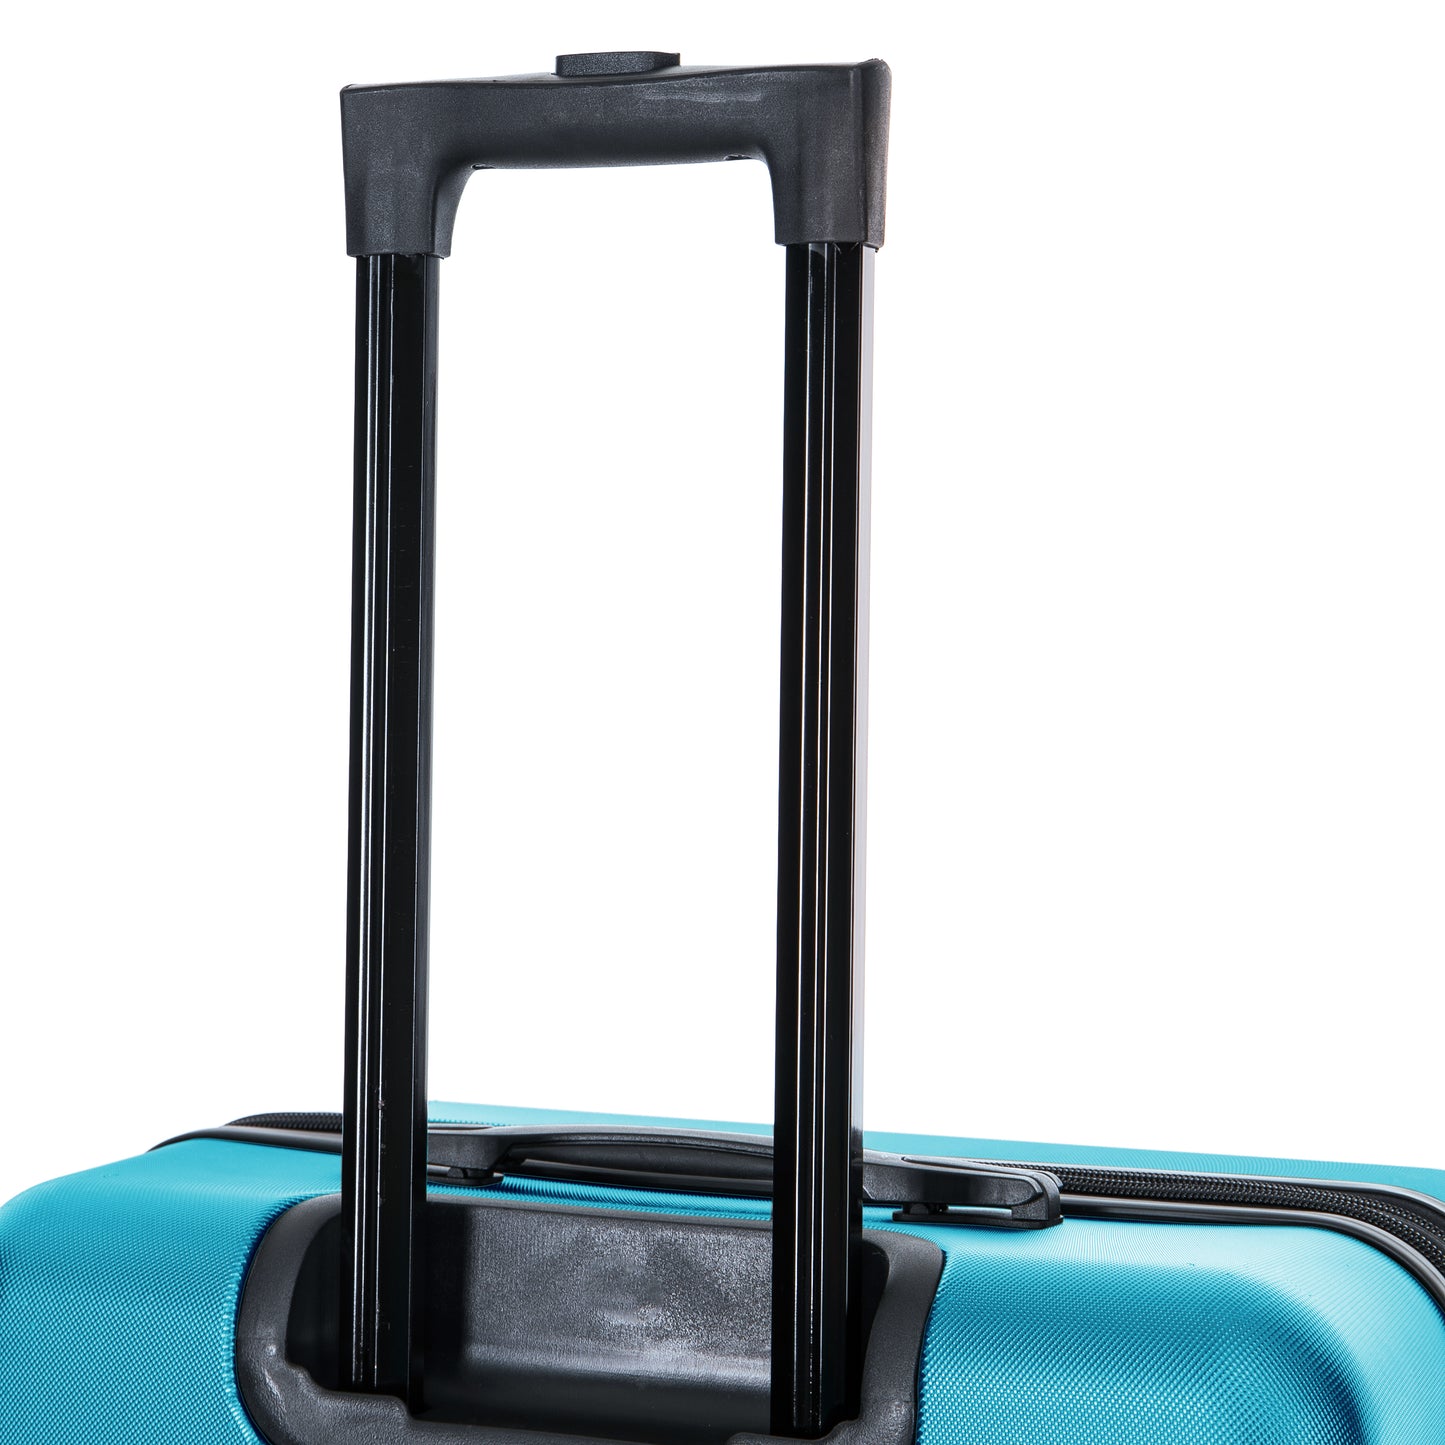 Elysian Hardside Spinner 28-Inch Large Luggage